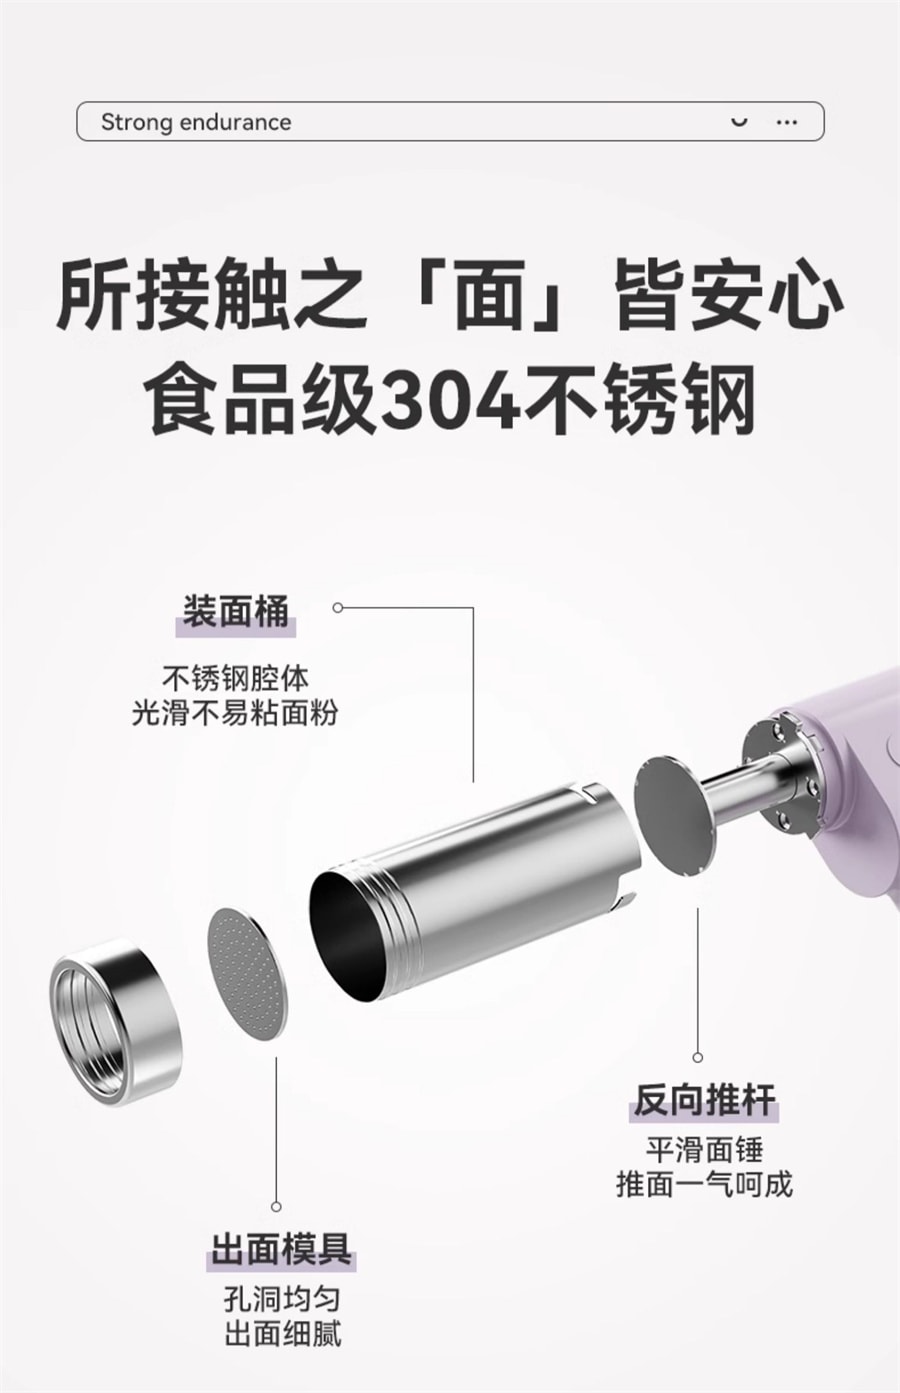 【中国直邮】BABYSTAR  面条机全自动家用压面机手持小型电动饸饹面机  香芋紫